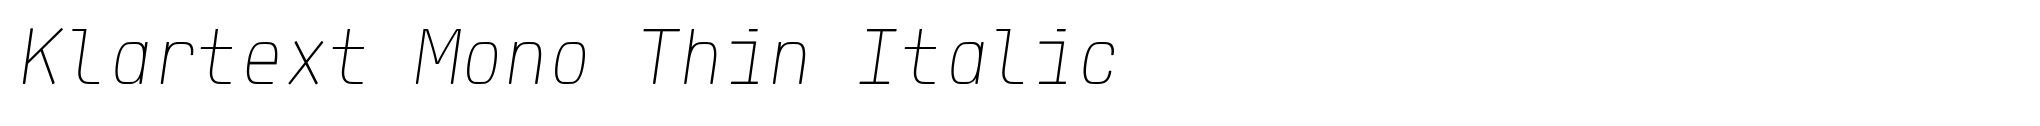 Klartext Mono Thin Italic image